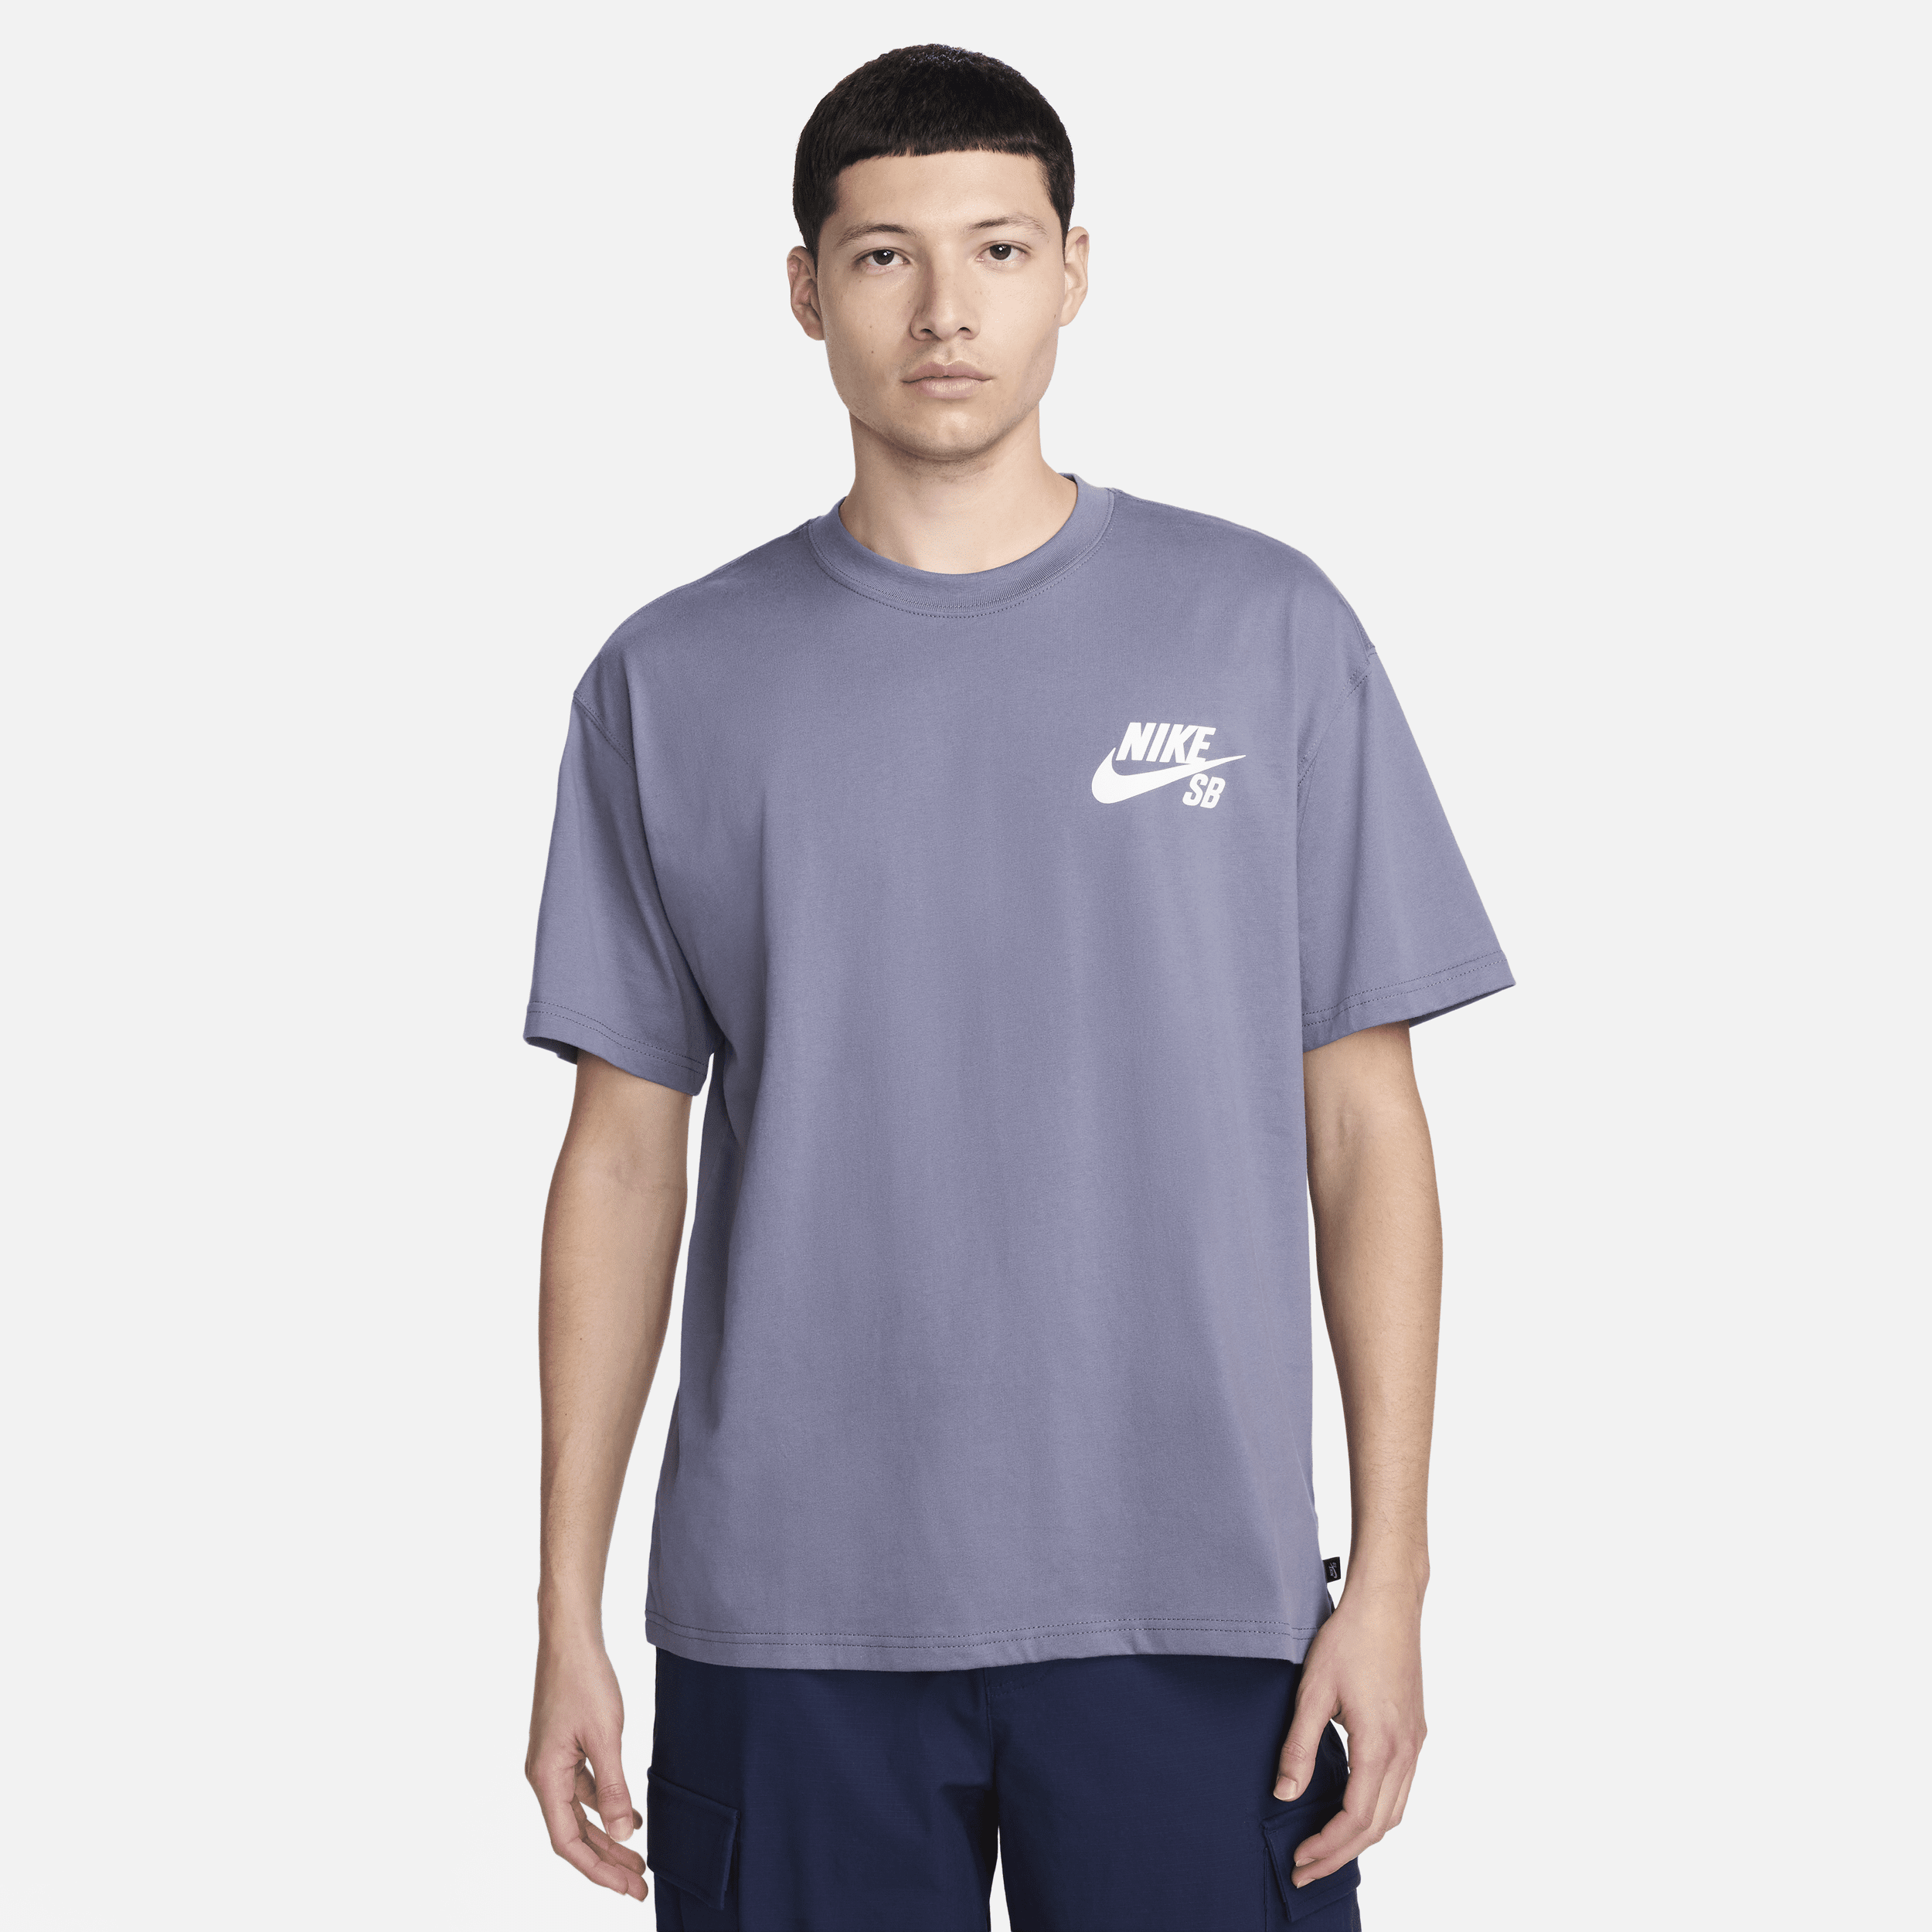 Nike SB-skater-T-shirt med logo - grå